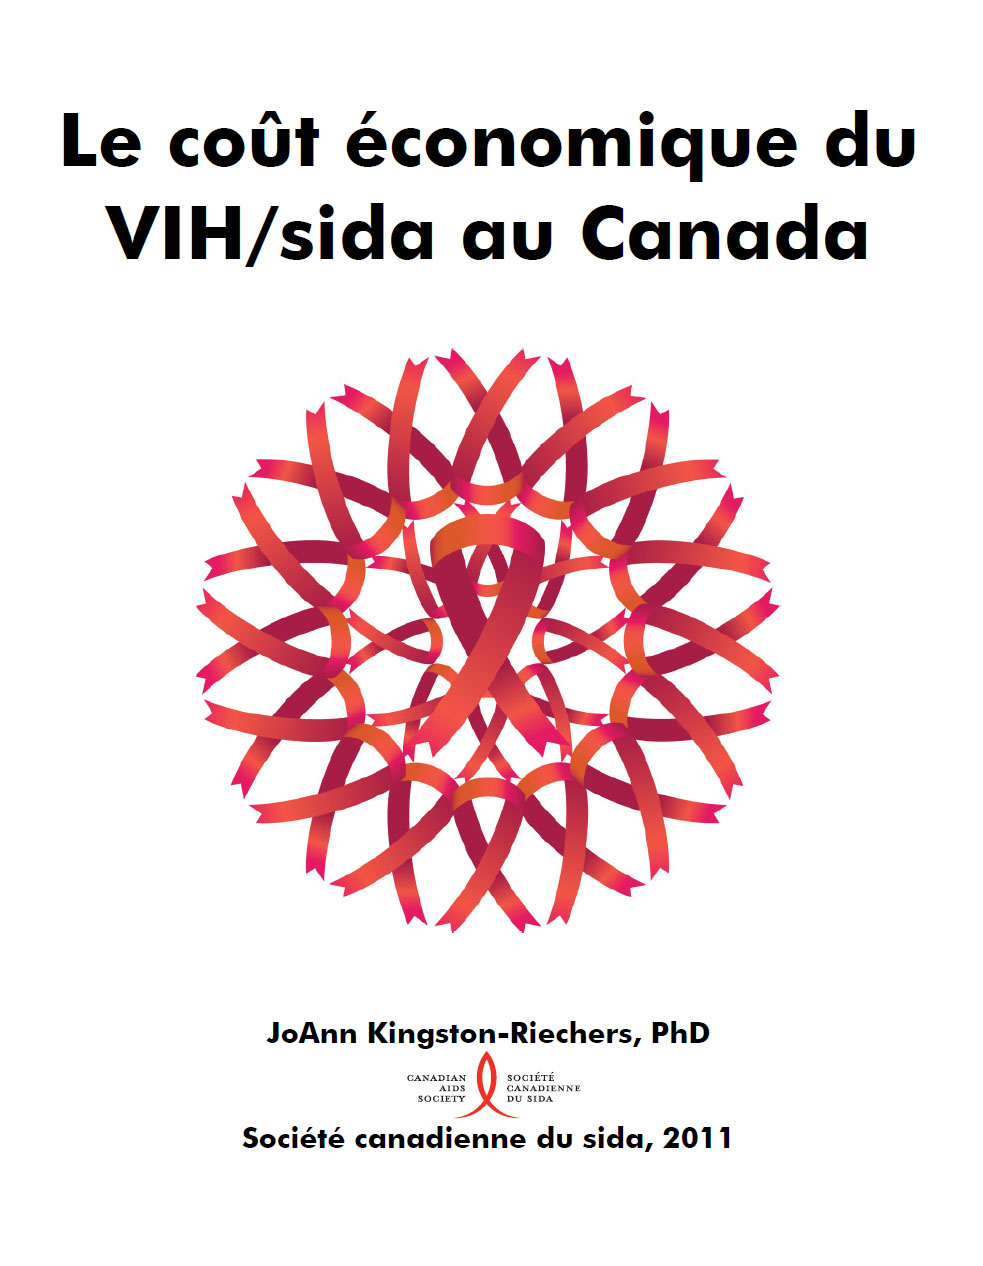 Le coût économique du VIH/sida au Canada